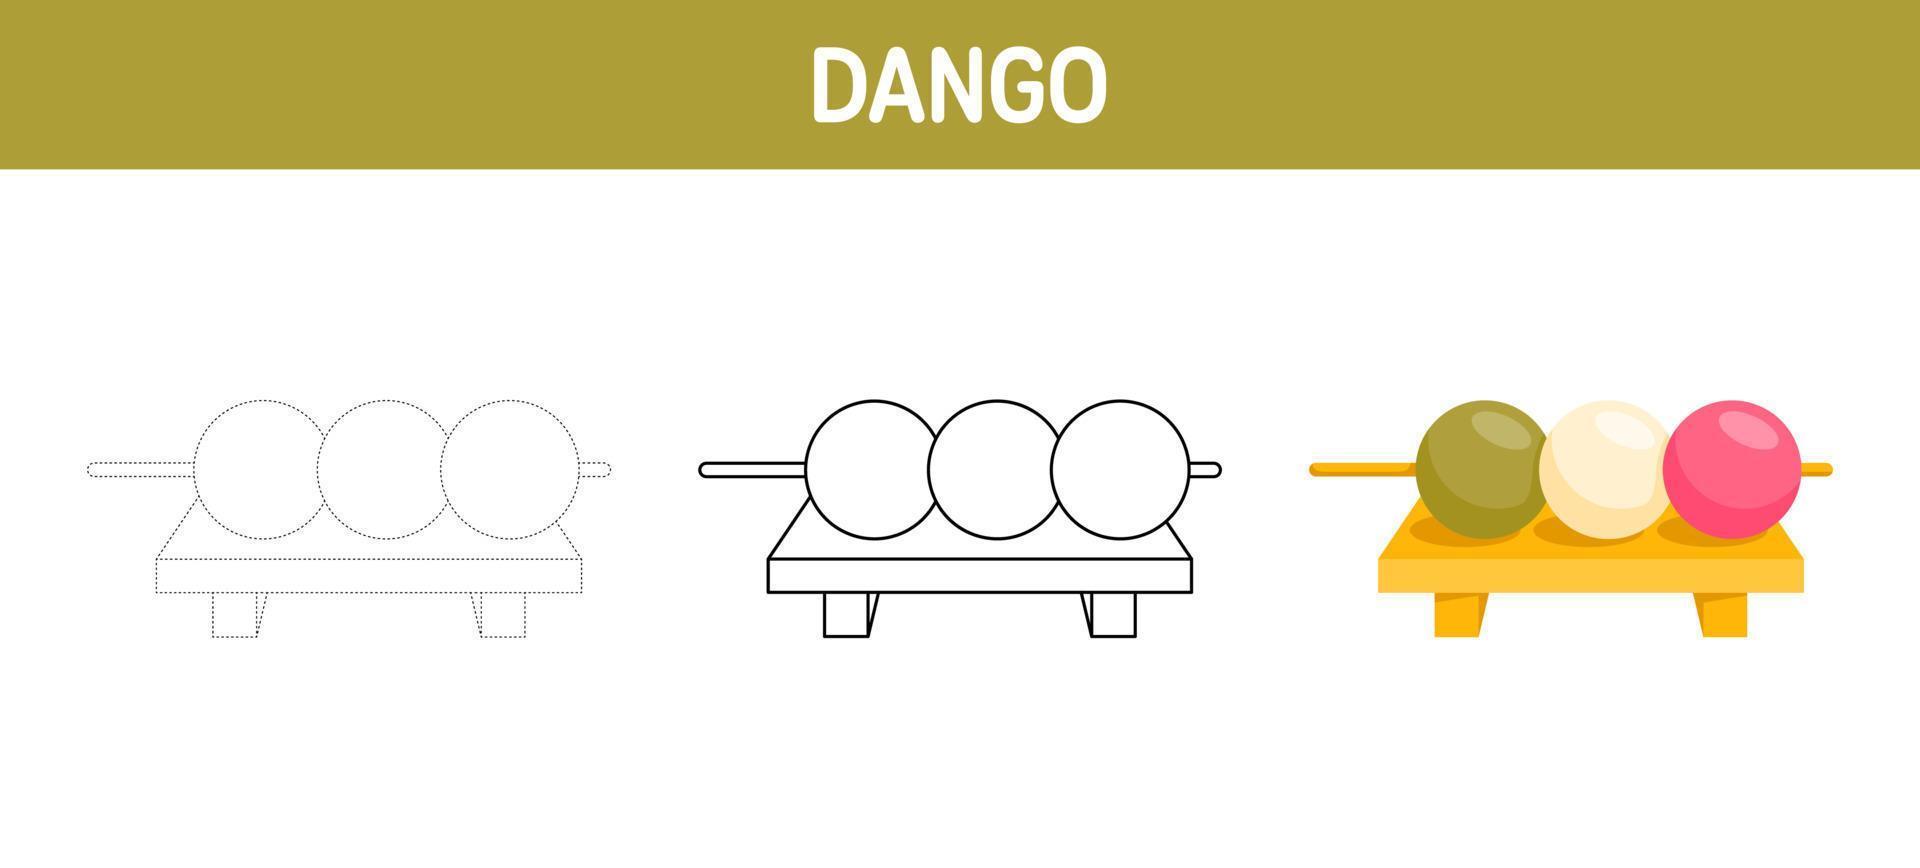 Arbeitsblatt zum Nachzeichnen und Ausmalen von Dango für Kinder vektor